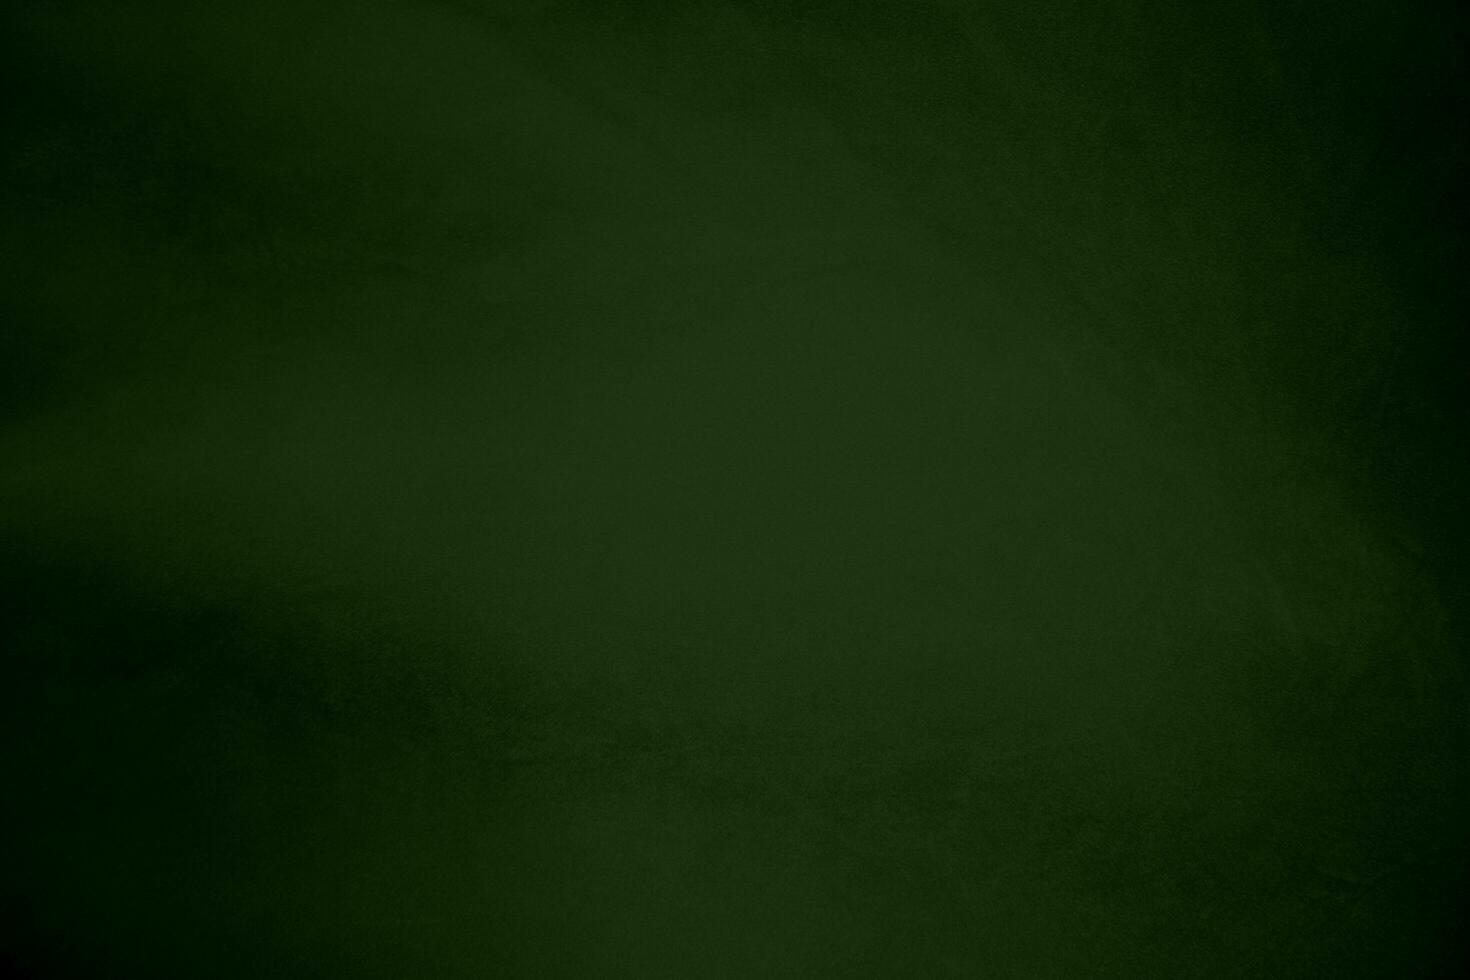 ljus grön sammet tyg textur lutning Begagnade som bakgrund. smaragd- Färg panne tyg bakgrund av mjuk och slät textil- material. krossad sammet .lyx smaragd- tona för silke. foto